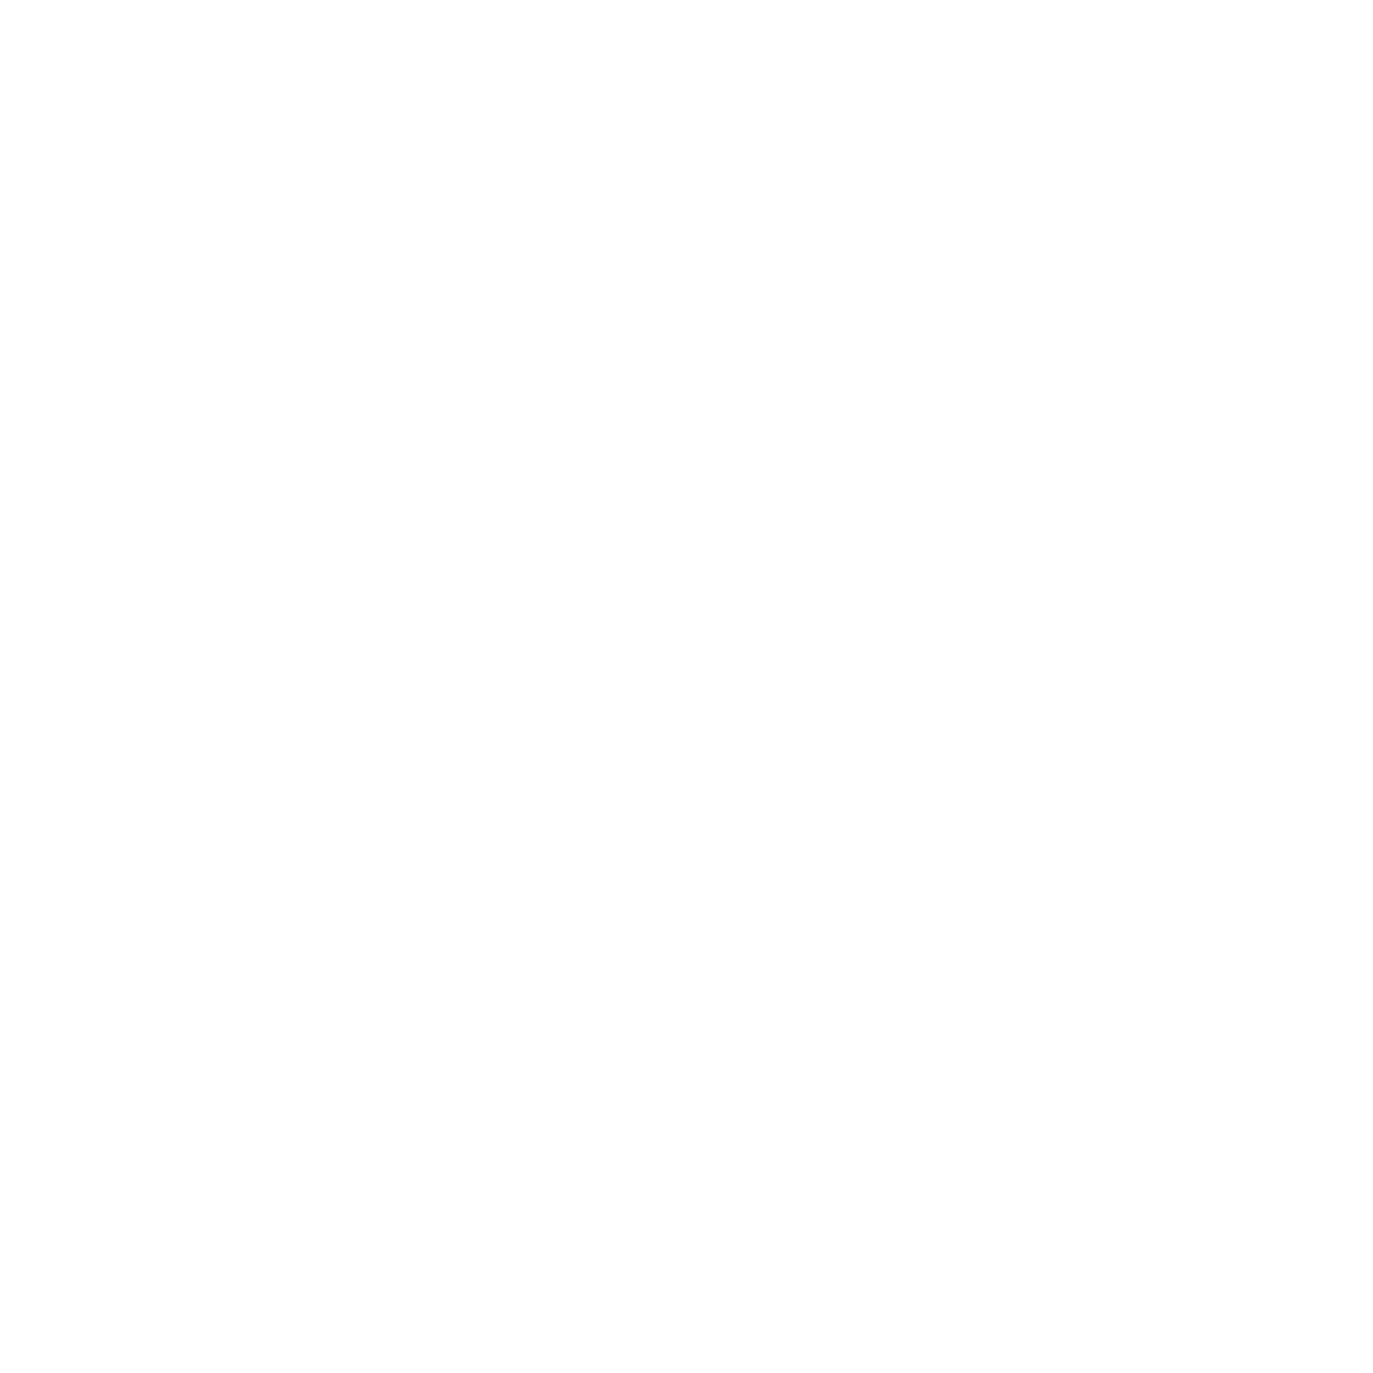 kubet - EvolutionGaming